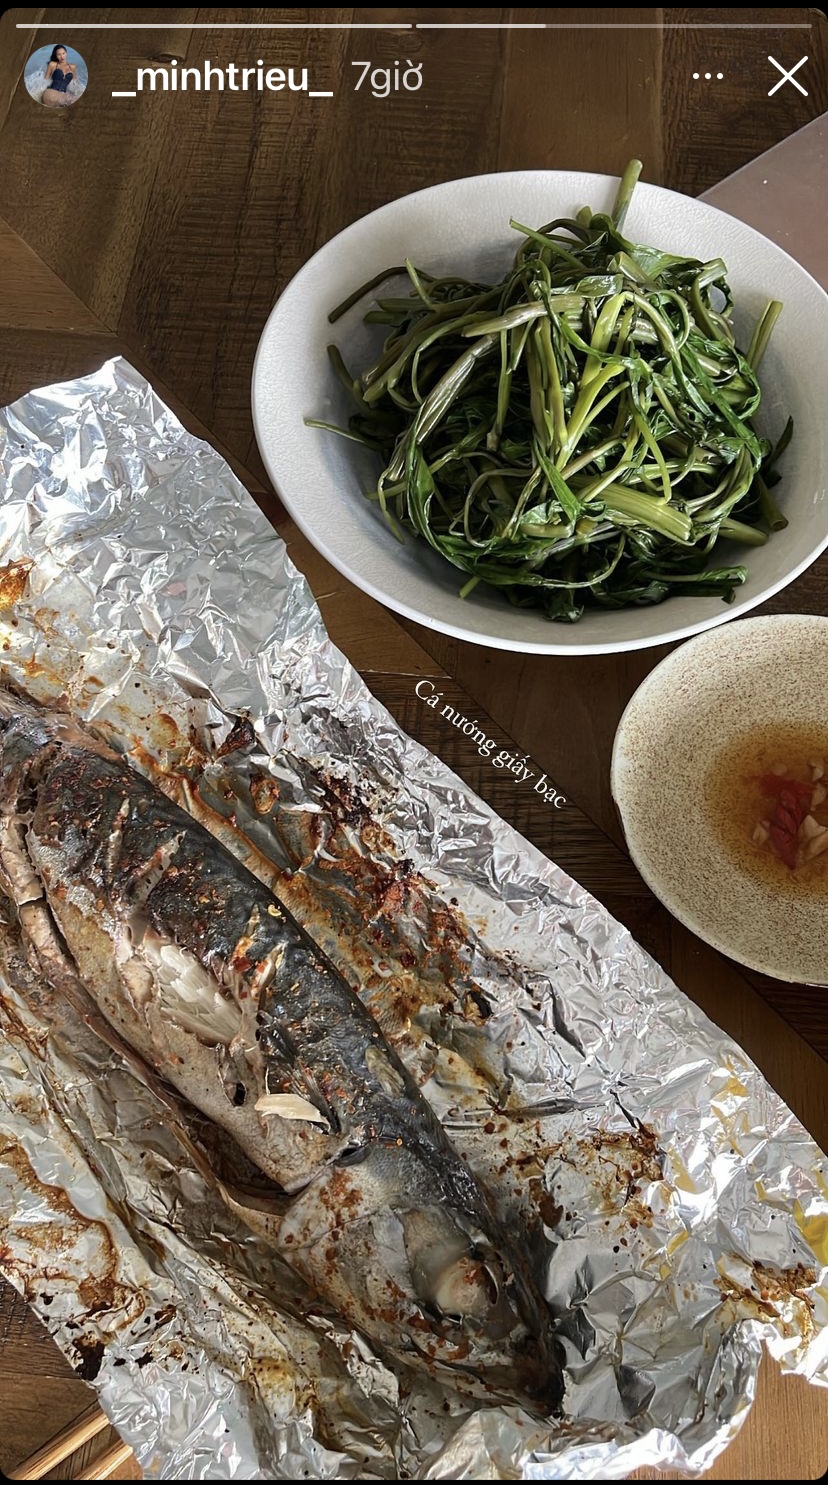 Chỉ với món cá nướng giấy bạc và rau luộc đơn giản, siêu mẫu Minh Triệu đã có một bữa ăn đủ chất cho hôm nay.